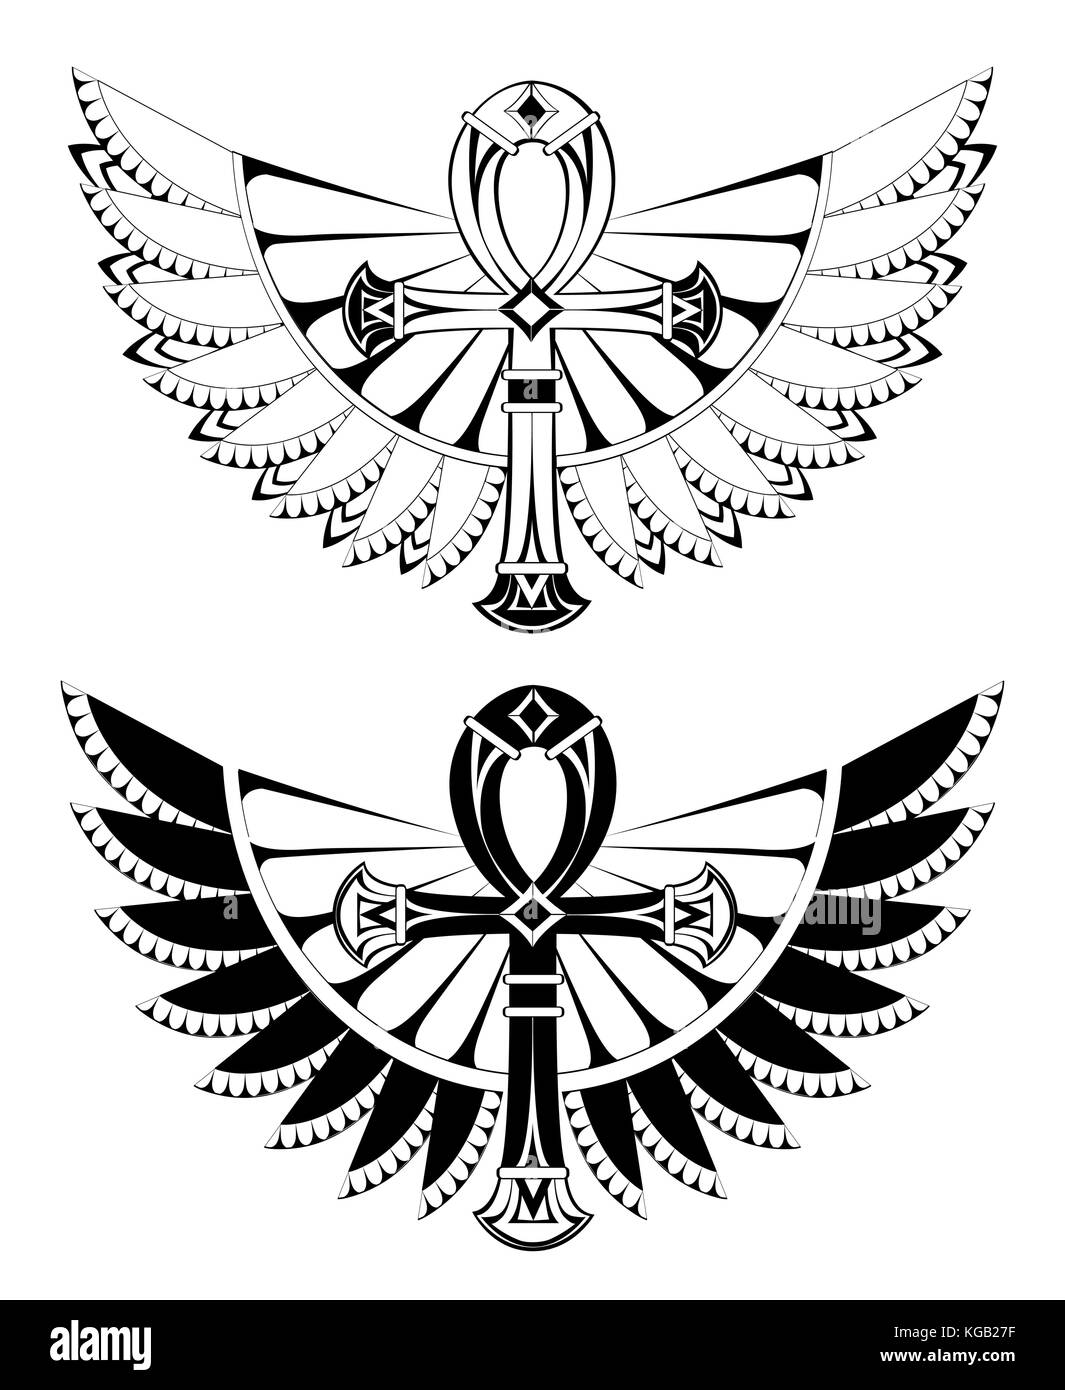 Zwei künstlerisch gezeichnet, konturierte ankhs mit Flügeln auf einem weißen Hintergrund. tattoos Stil. Element des Designs. ägyptische Kreuz. schwarz Ankh Stock Vektor